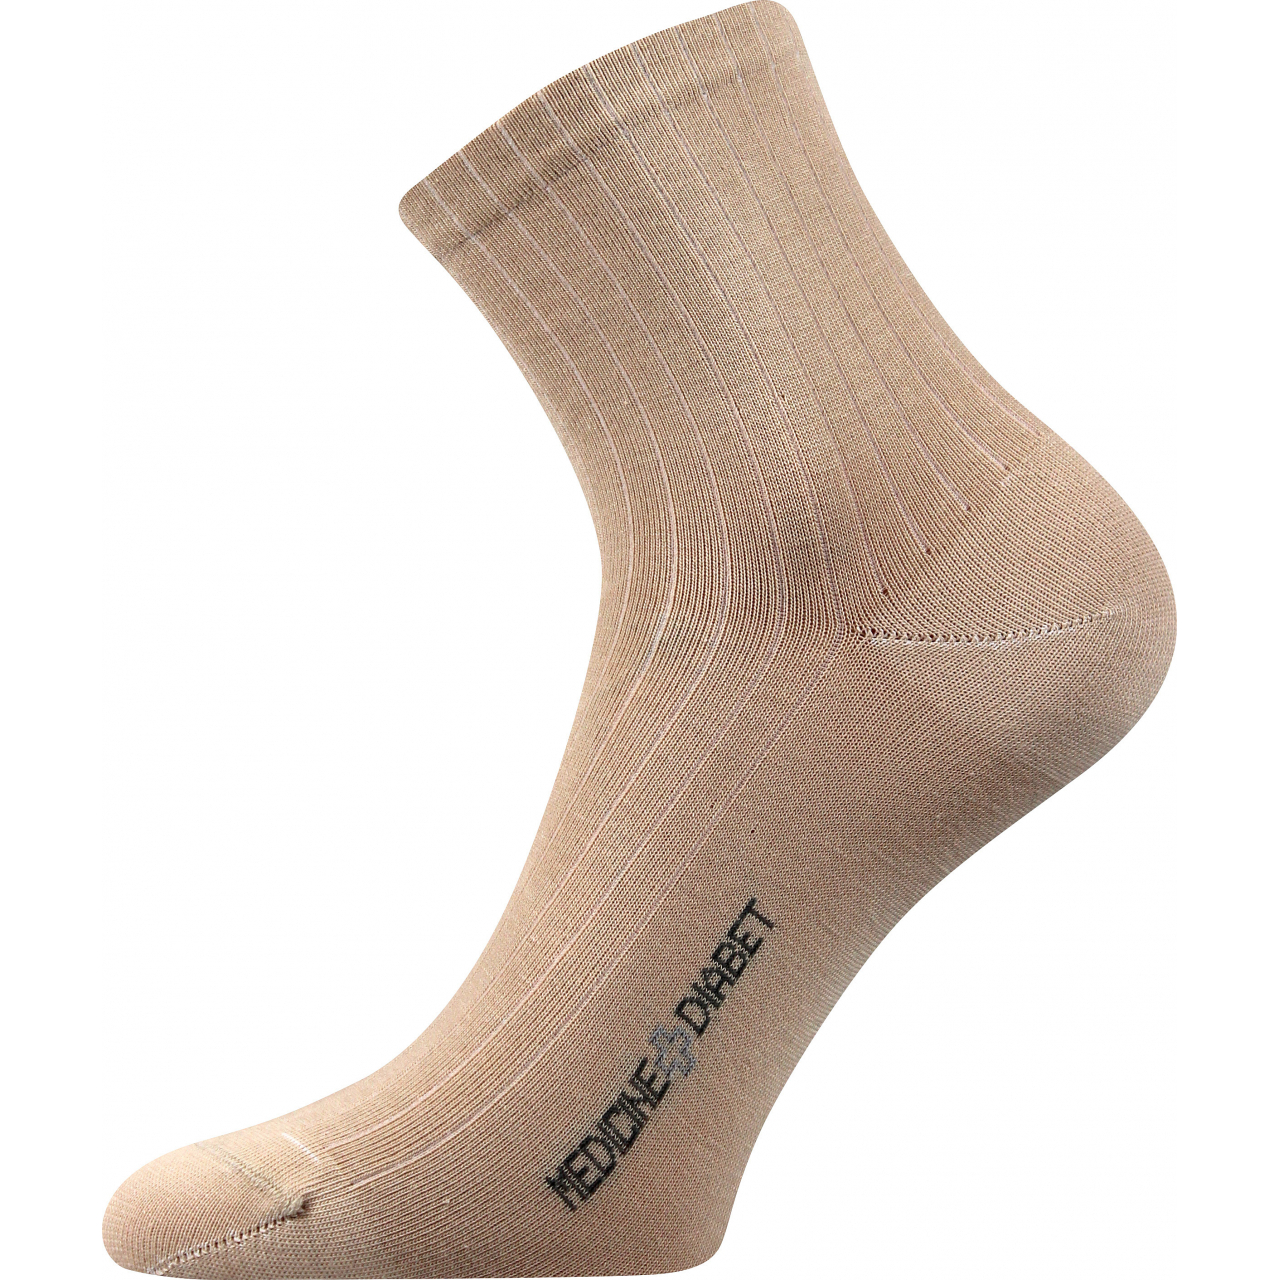 Ponožky zdravotní Lonka Demedik - béžové, 43-46